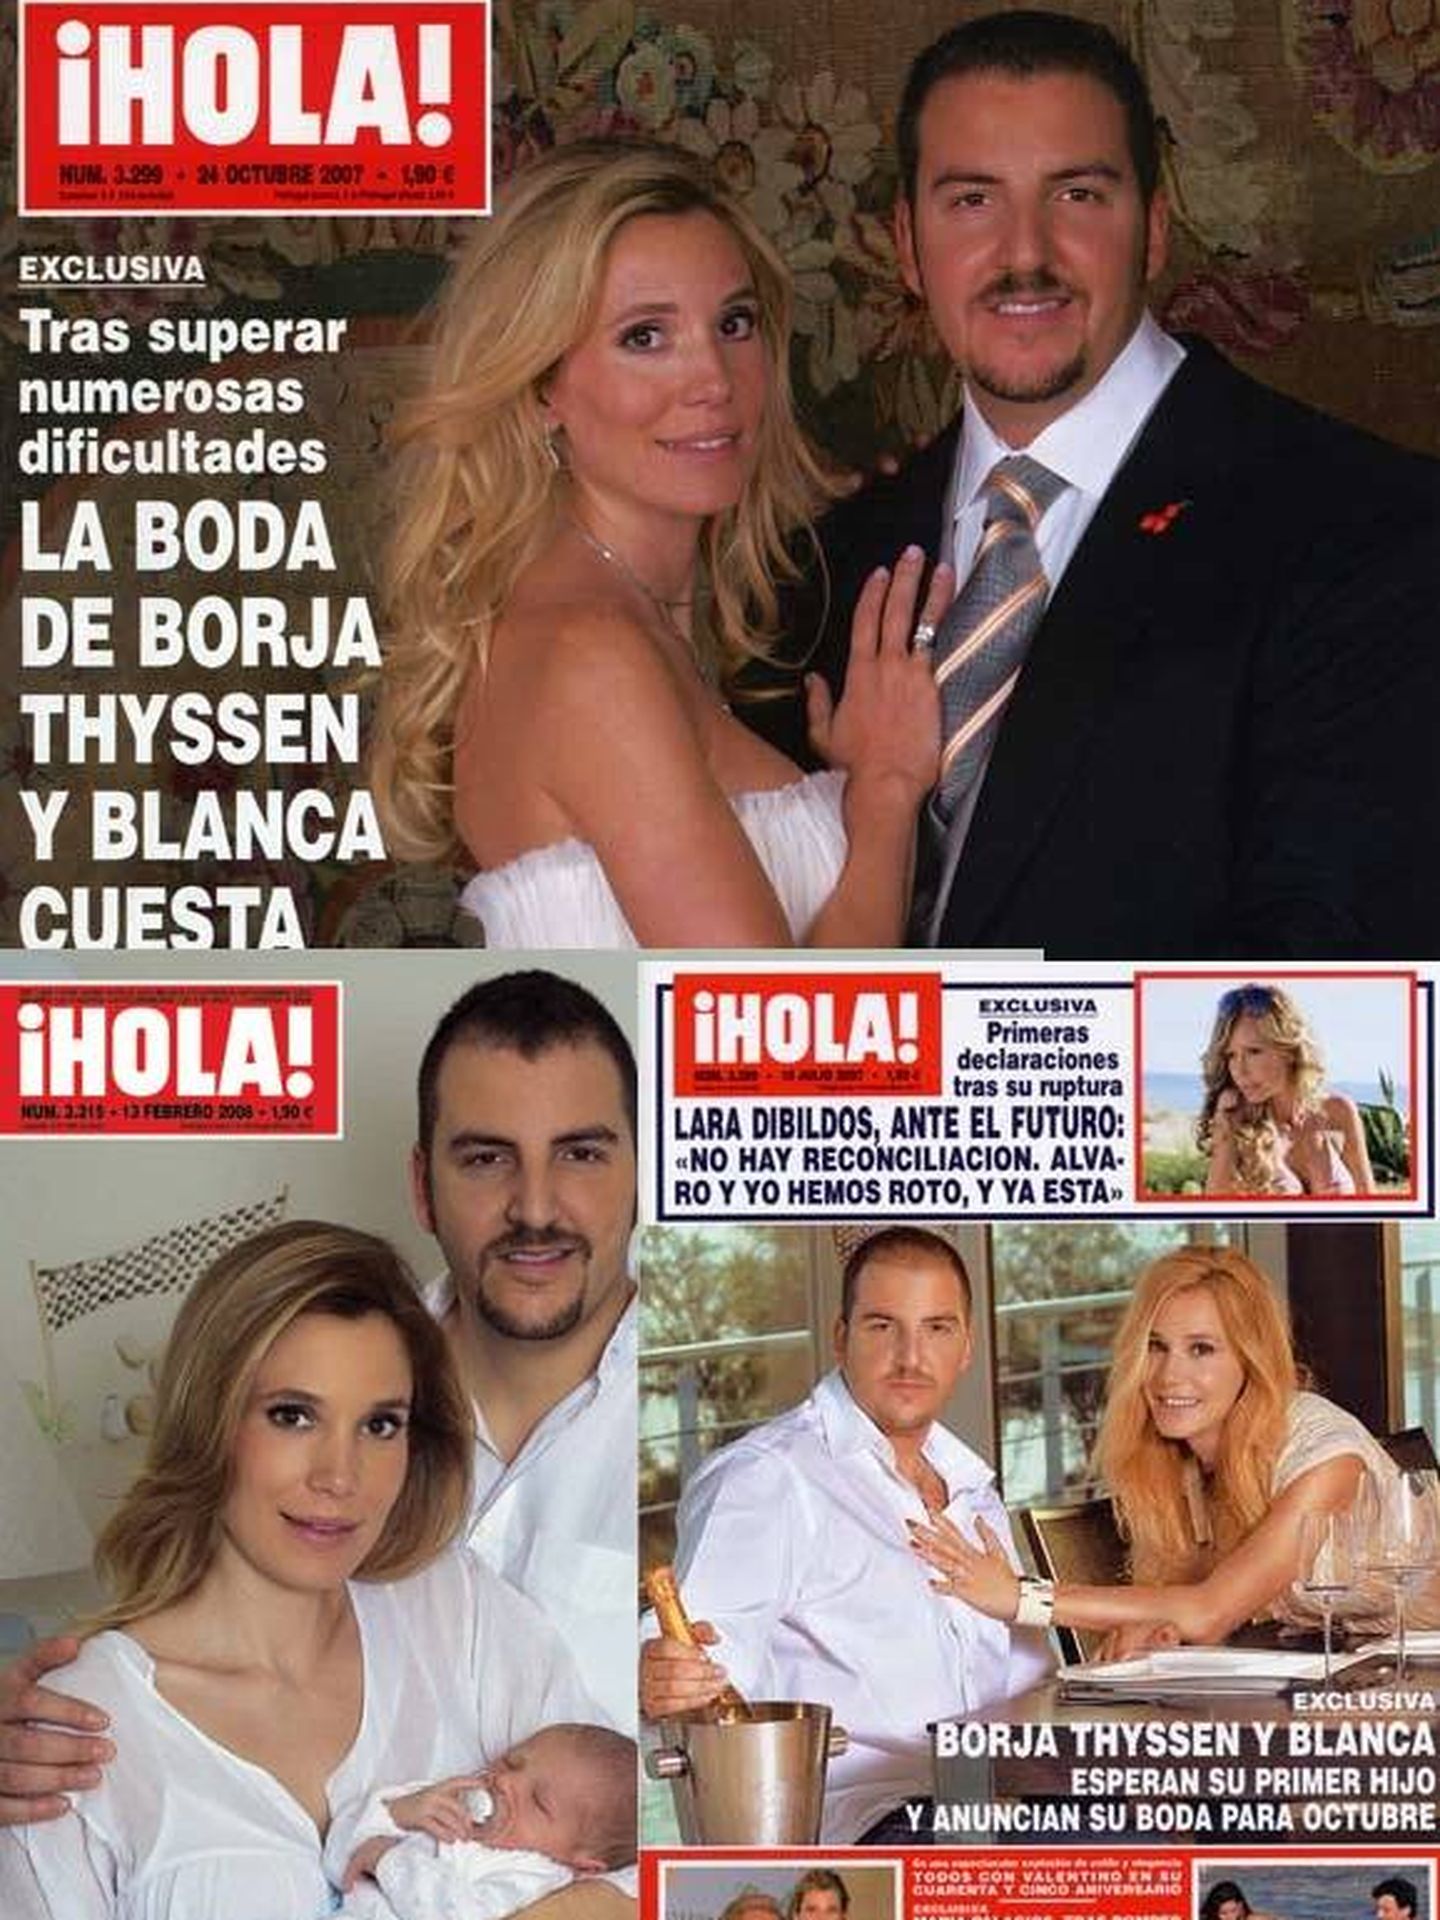 Borja Thyssen, en las portadas del '¡Hola!' cuyos pagos investiga el juez.